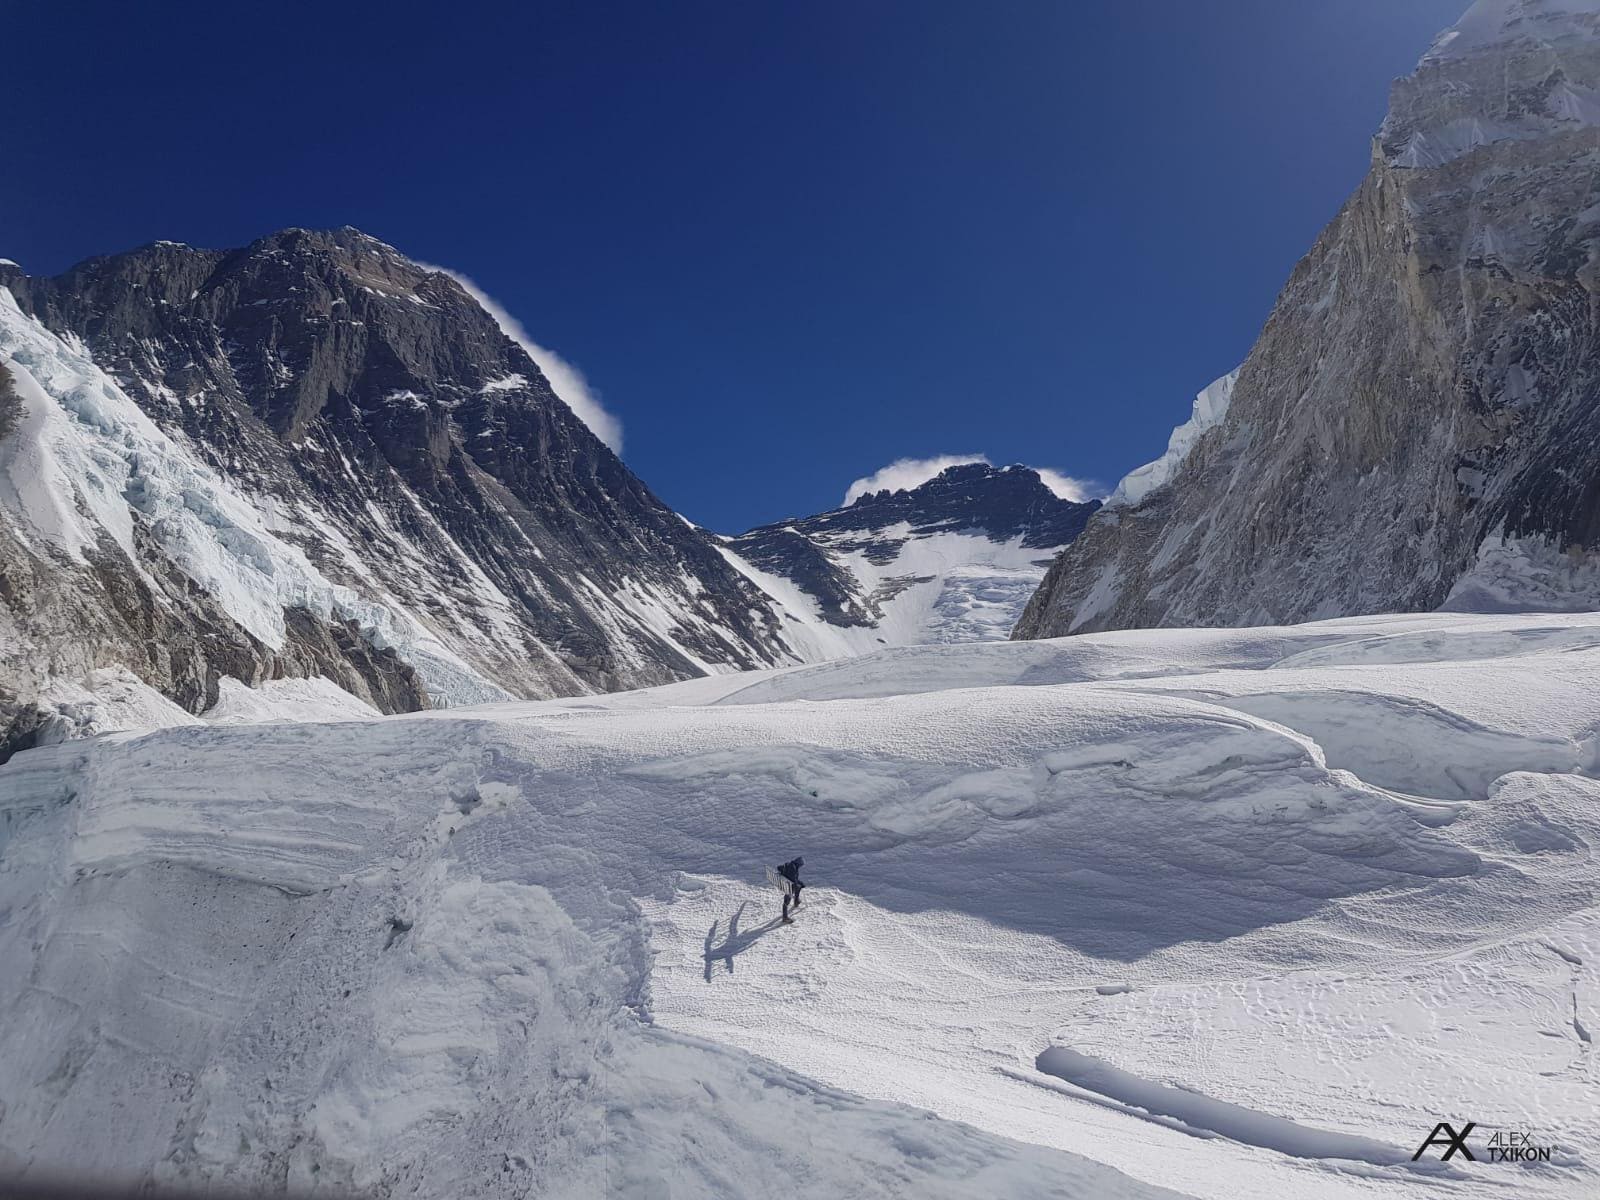 Fotos: Expedición de Txikon al Everest